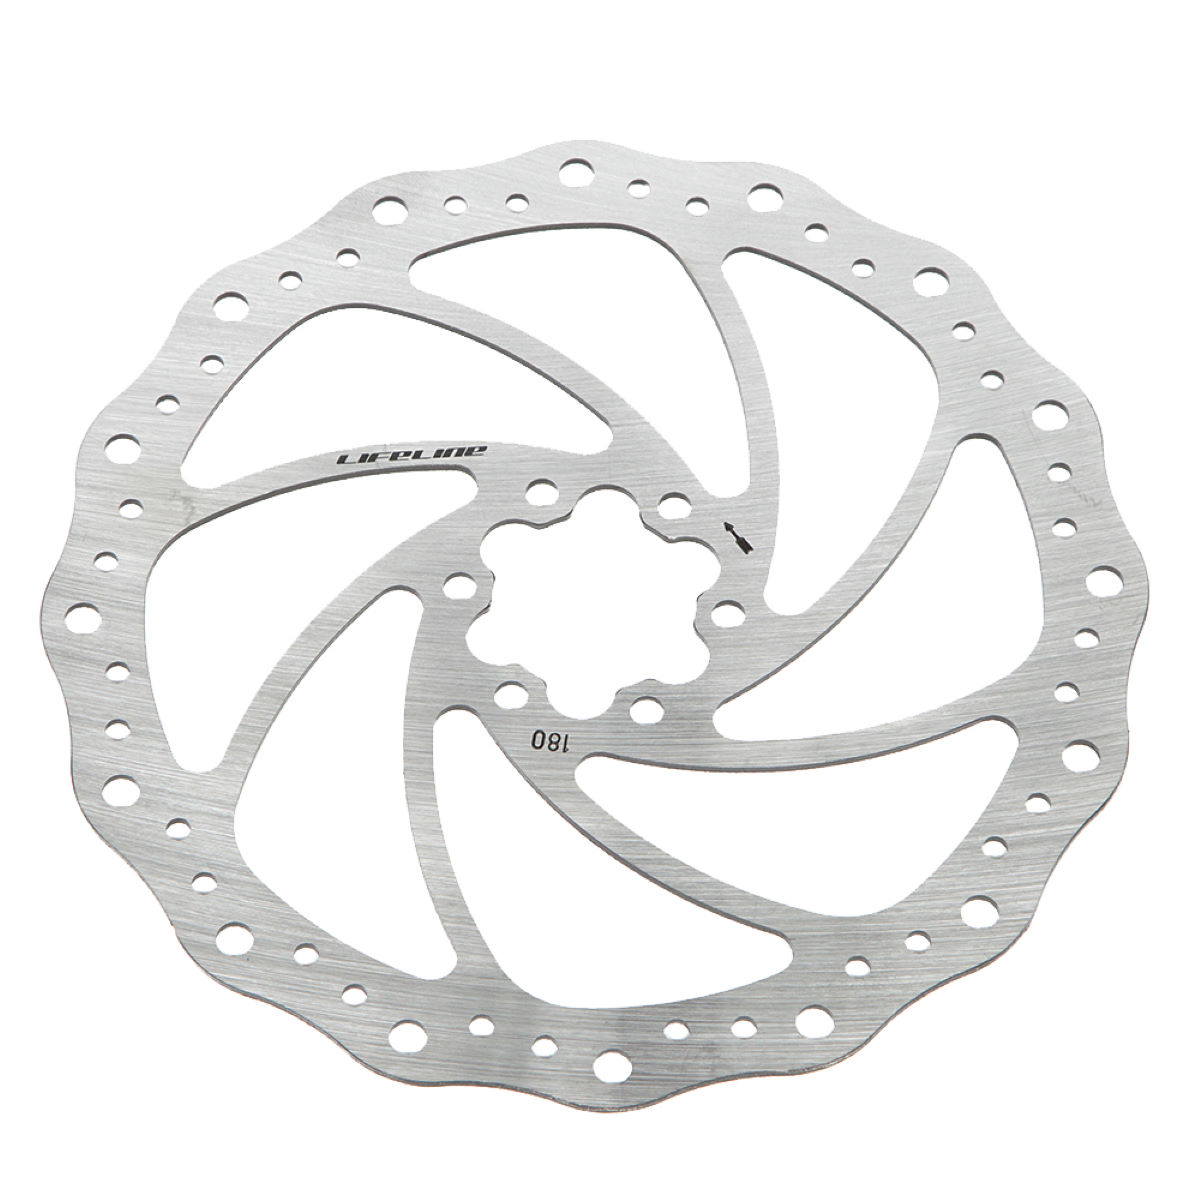 Rotor de acero inoxidable de una pieza para freno de disco LifeLine (180 mm) - Rotores para frenos de disco